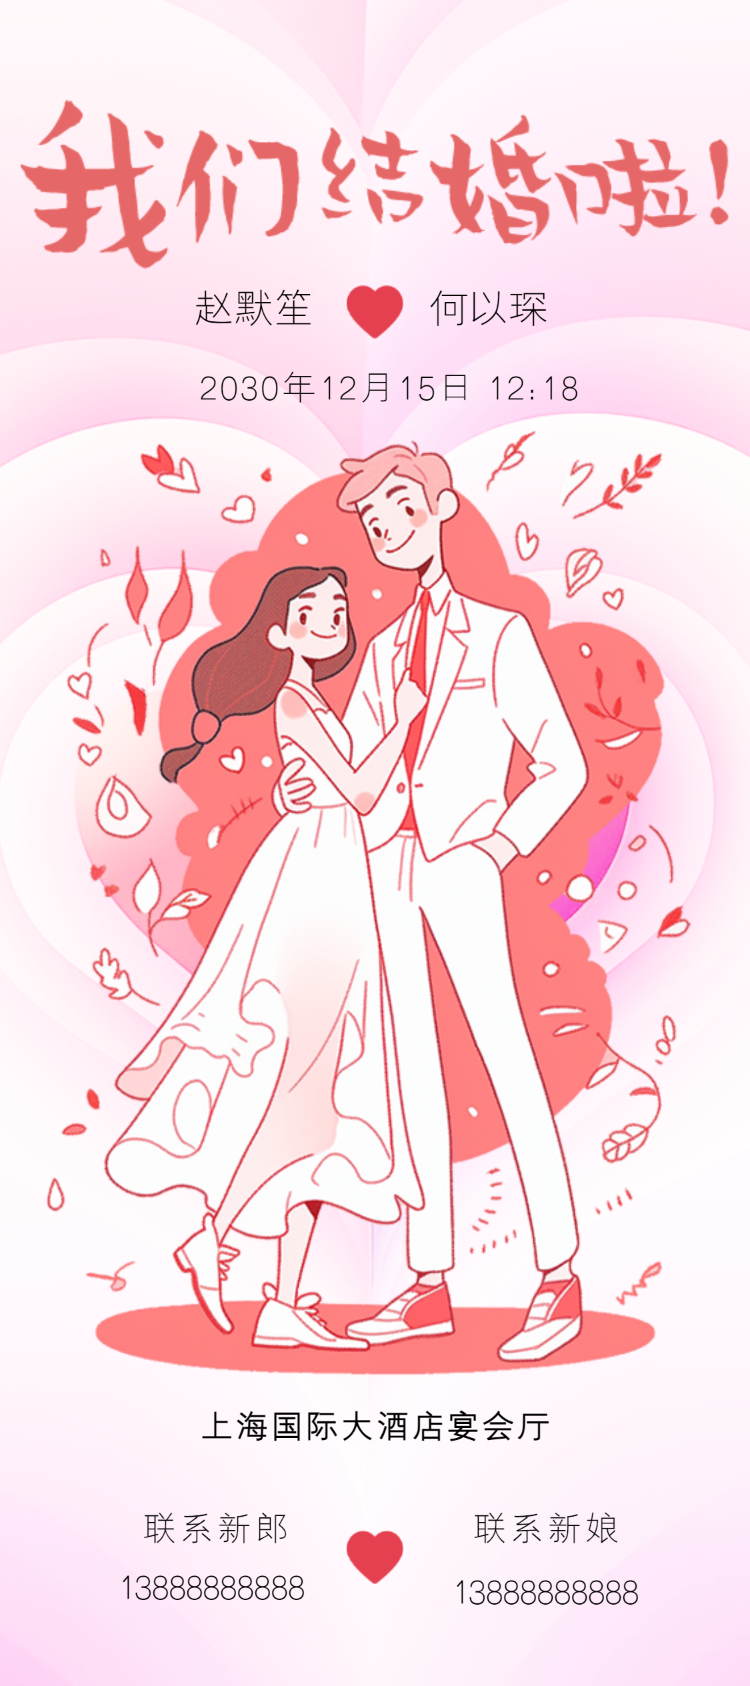 卡通粉红色插画手绘婚纱婚礼邀请函宣传海报